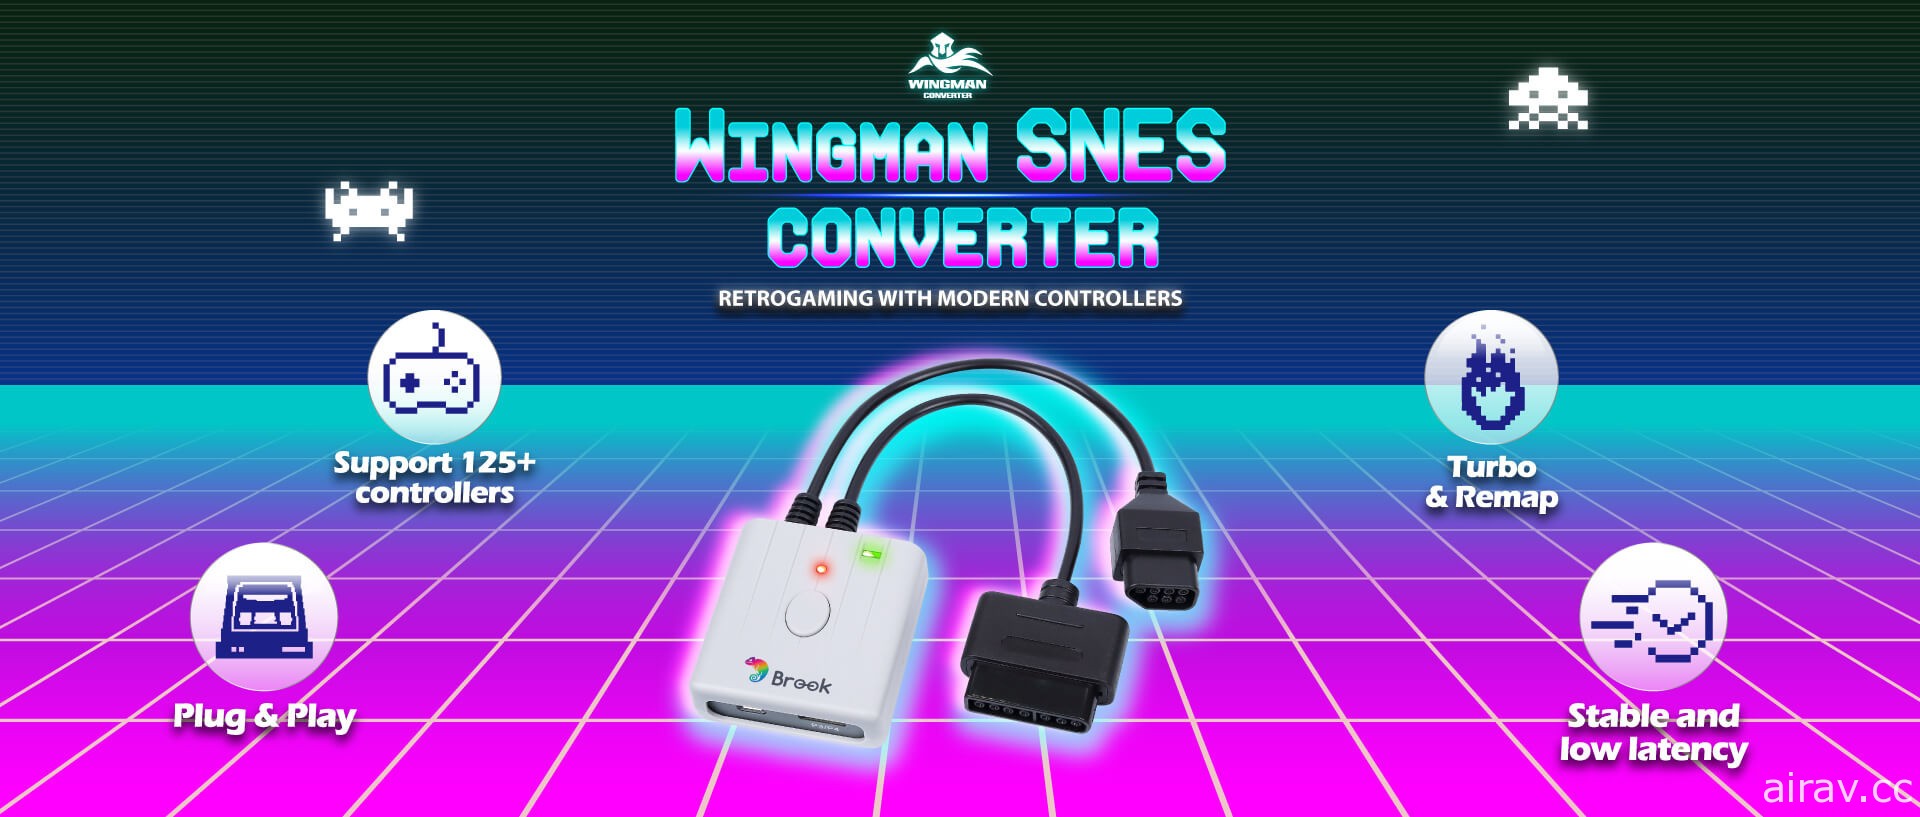 台廠自製 NES / SNES 搖桿轉接器「Wingman SNES」限量上市